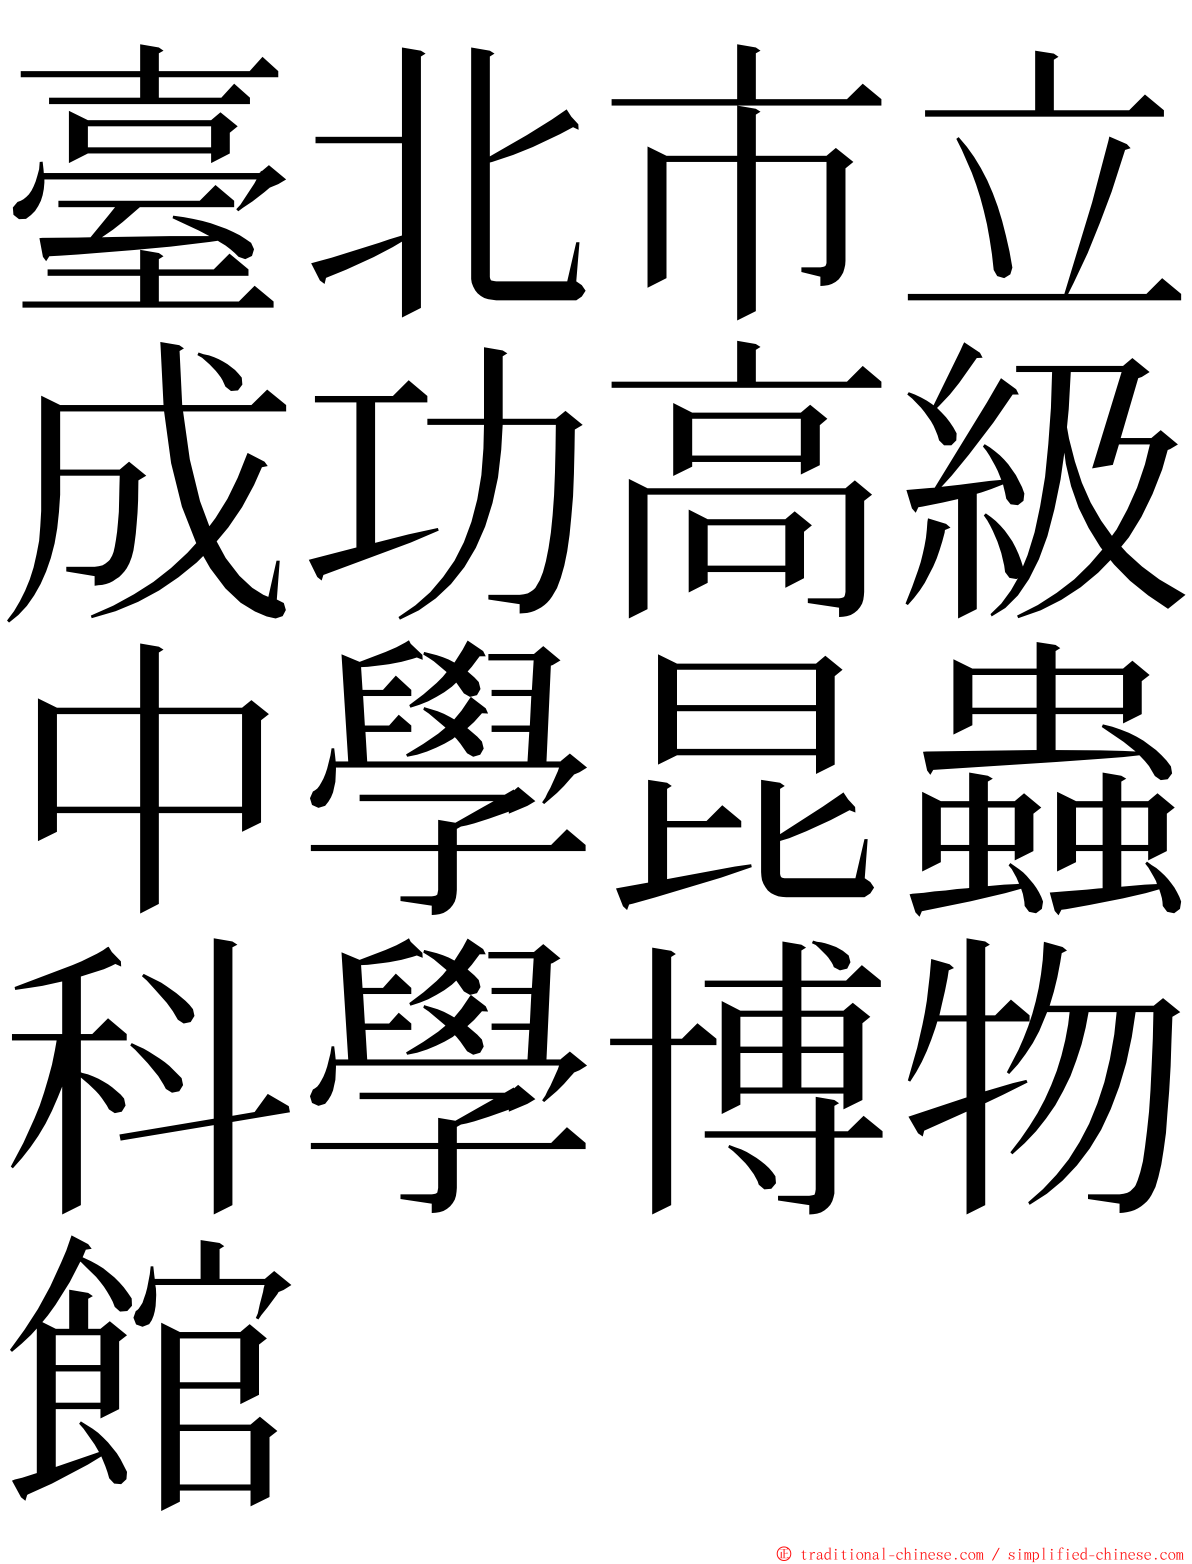 臺北市立成功高級中學昆蟲科學博物館 ming font